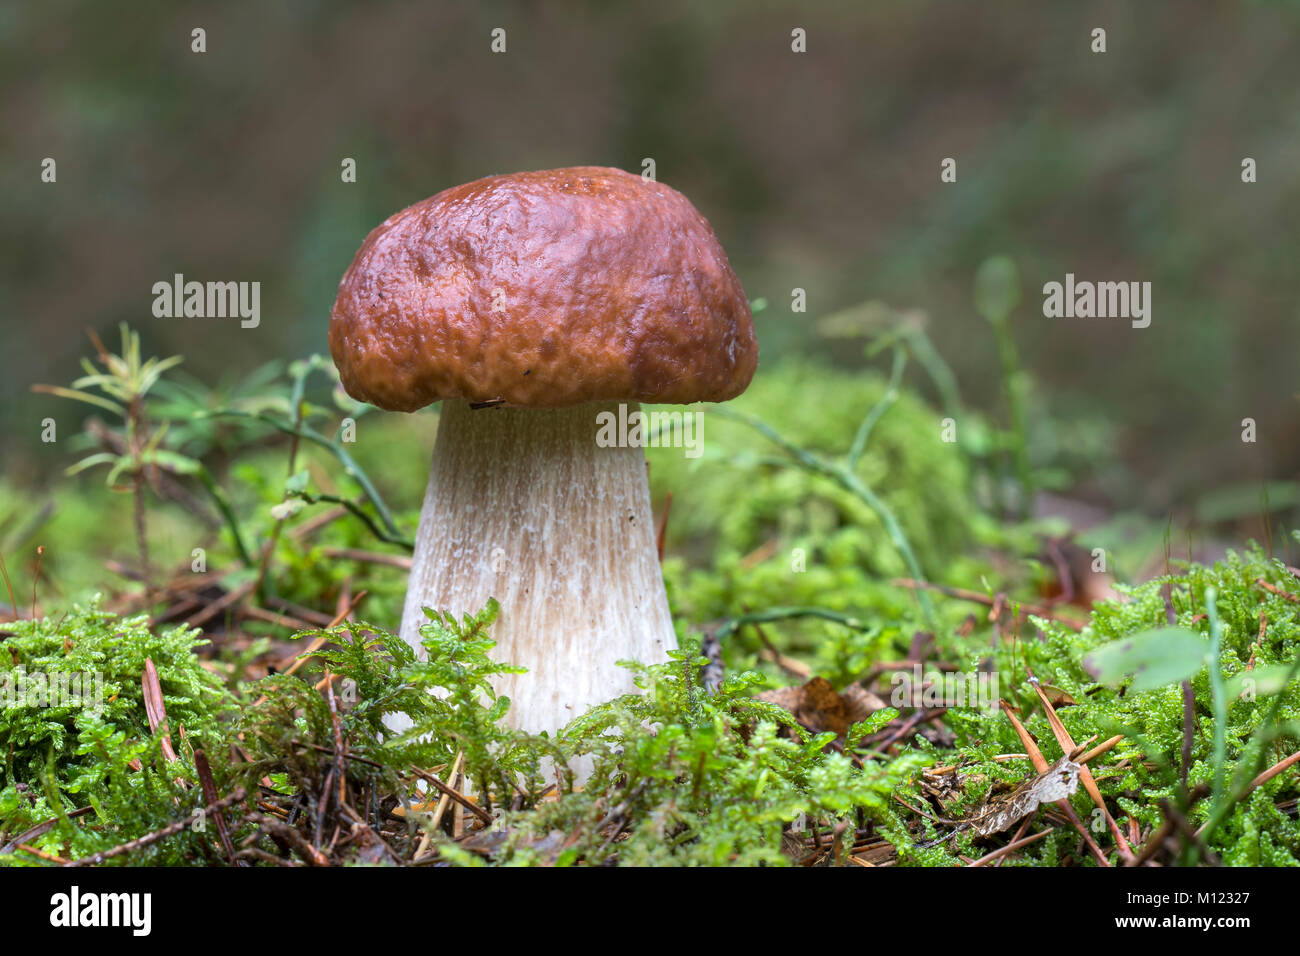 Funghi porcini (Boletus edulis) su moss,Burgenland, Austria Foto Stock